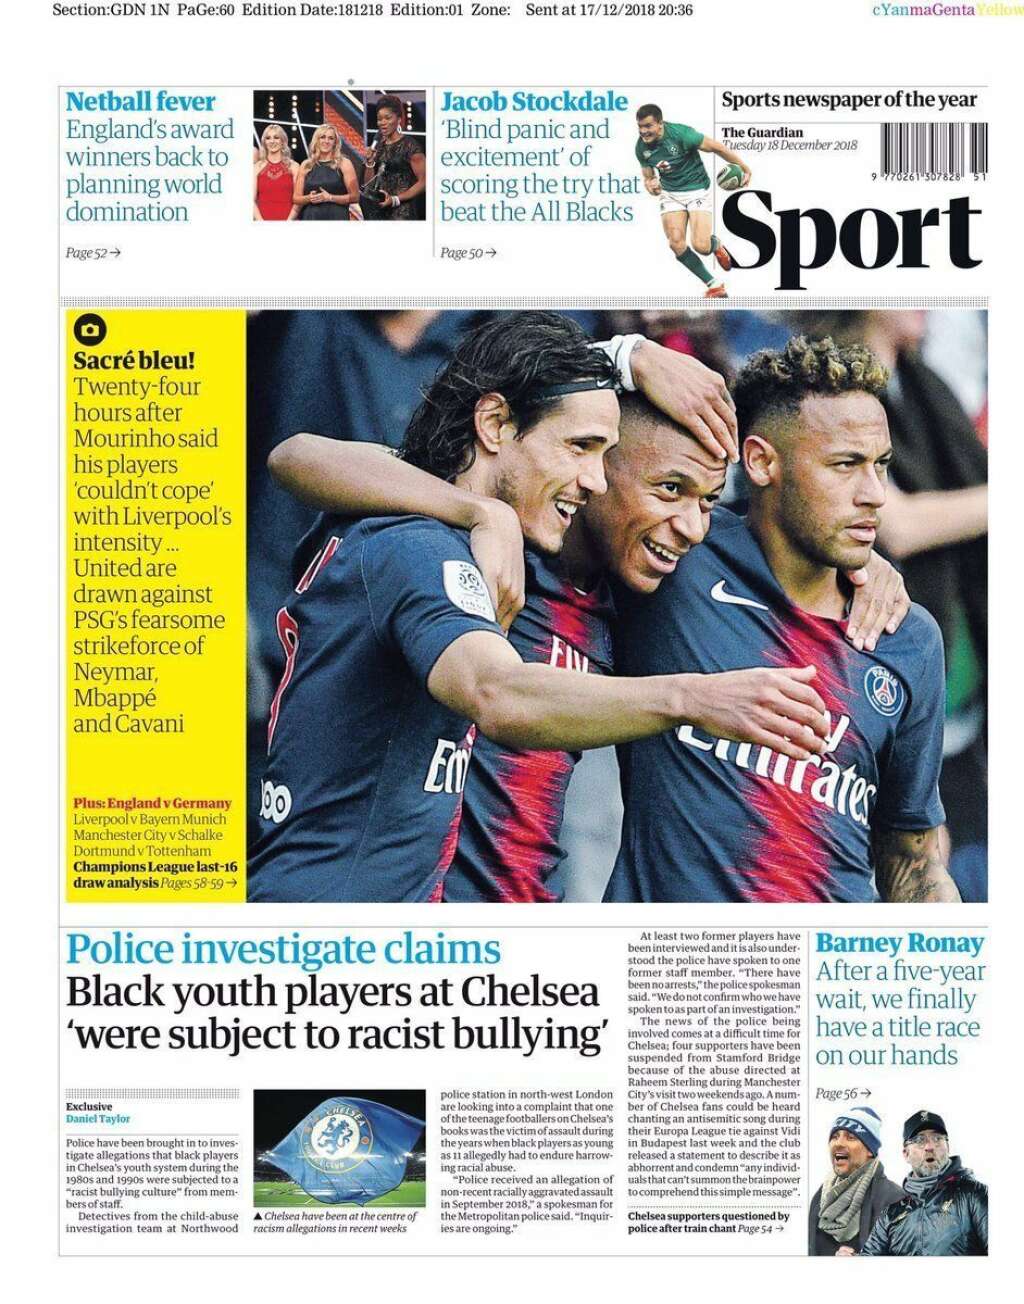 18 décembre - "The Guardian" - <p>"Sacré bleu", écrivait le <em>Guardian</em> en décembre en mettant en garde quant à la force de frappe offensive du PSG et son trio Cavani-Neymar-Mbappé.</p>  <p>Sur la pelouse d'Old Trafford, seul le dernier sera aligné ce mardi soir.</p>